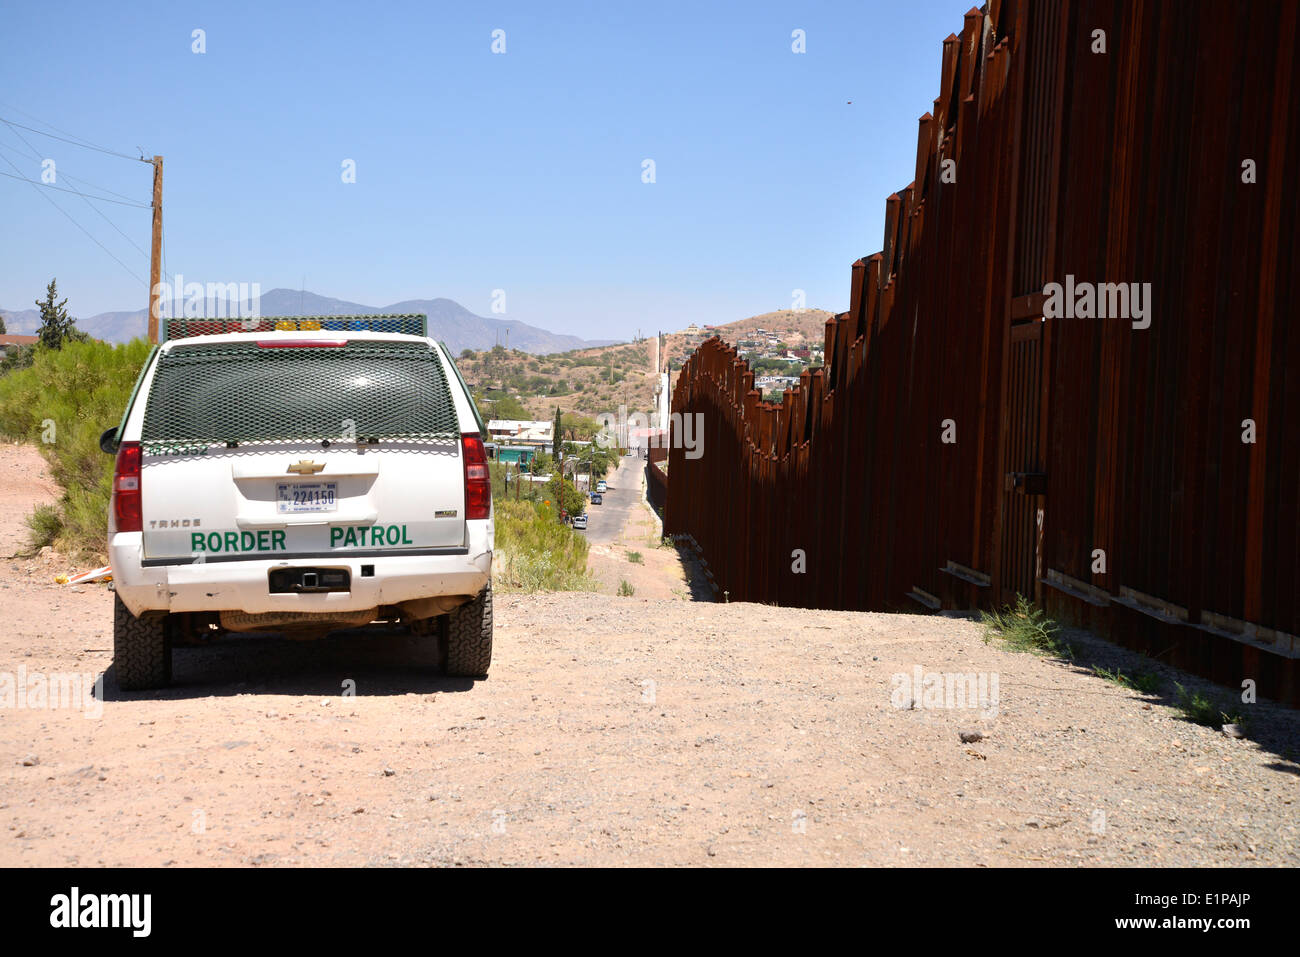 Una parete metallica indica i confini internazionali tra Nogales, Arizona, Stati Uniti d'America e di Nogales, Sonora, Messico, visto dagli Stati Uniti. Foto Stock